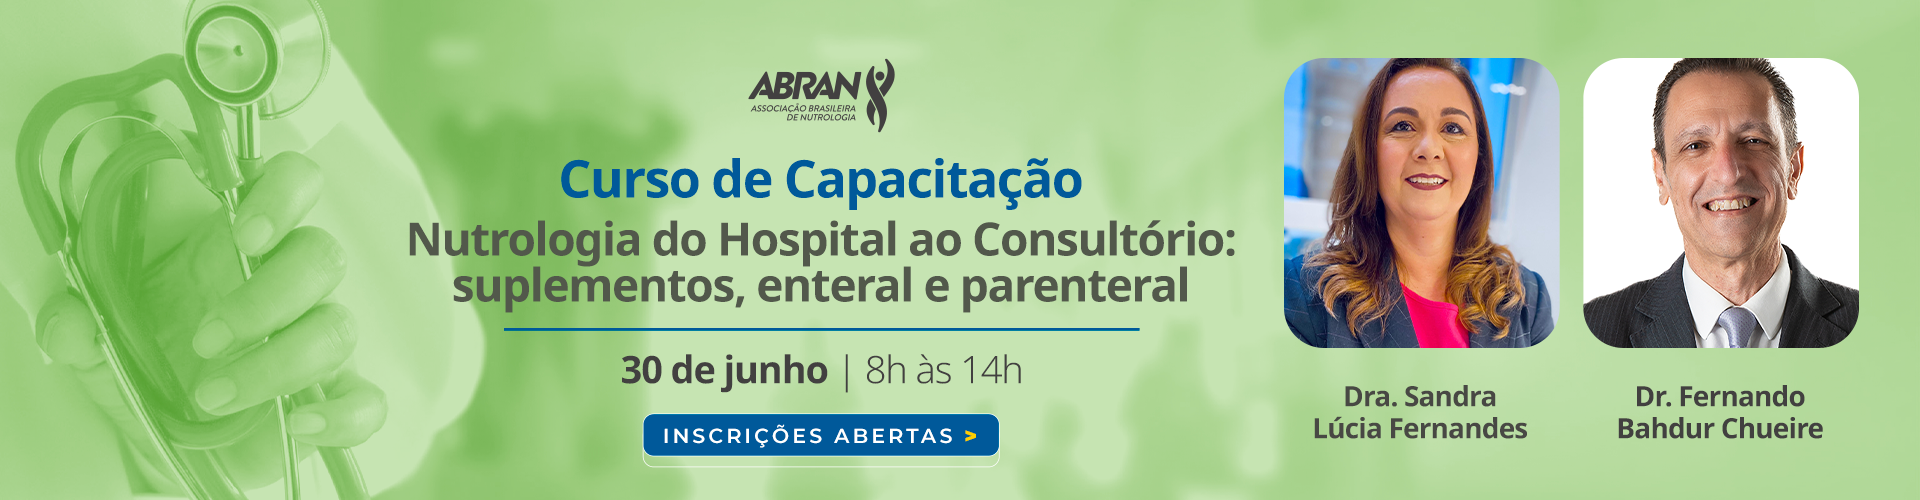 Curso de capacitação - Nutrologia do Hospital ao Consultório: Suplementos enteral e parenteral